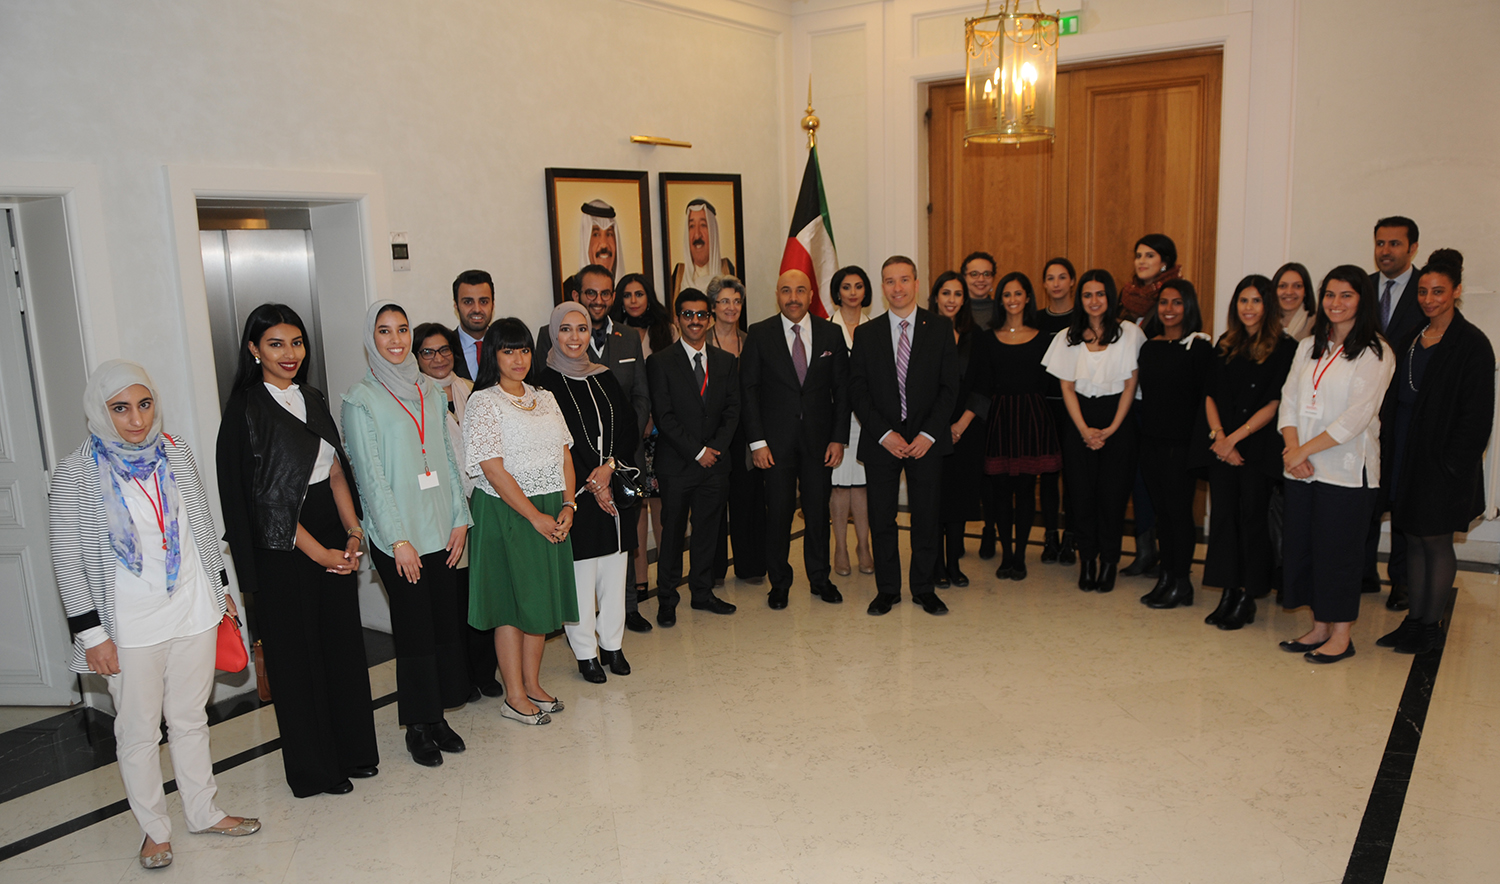 سفير دولة الكويت لدى فرنسا سامي محمد السليمان يتوسط الطلبة الخريجين